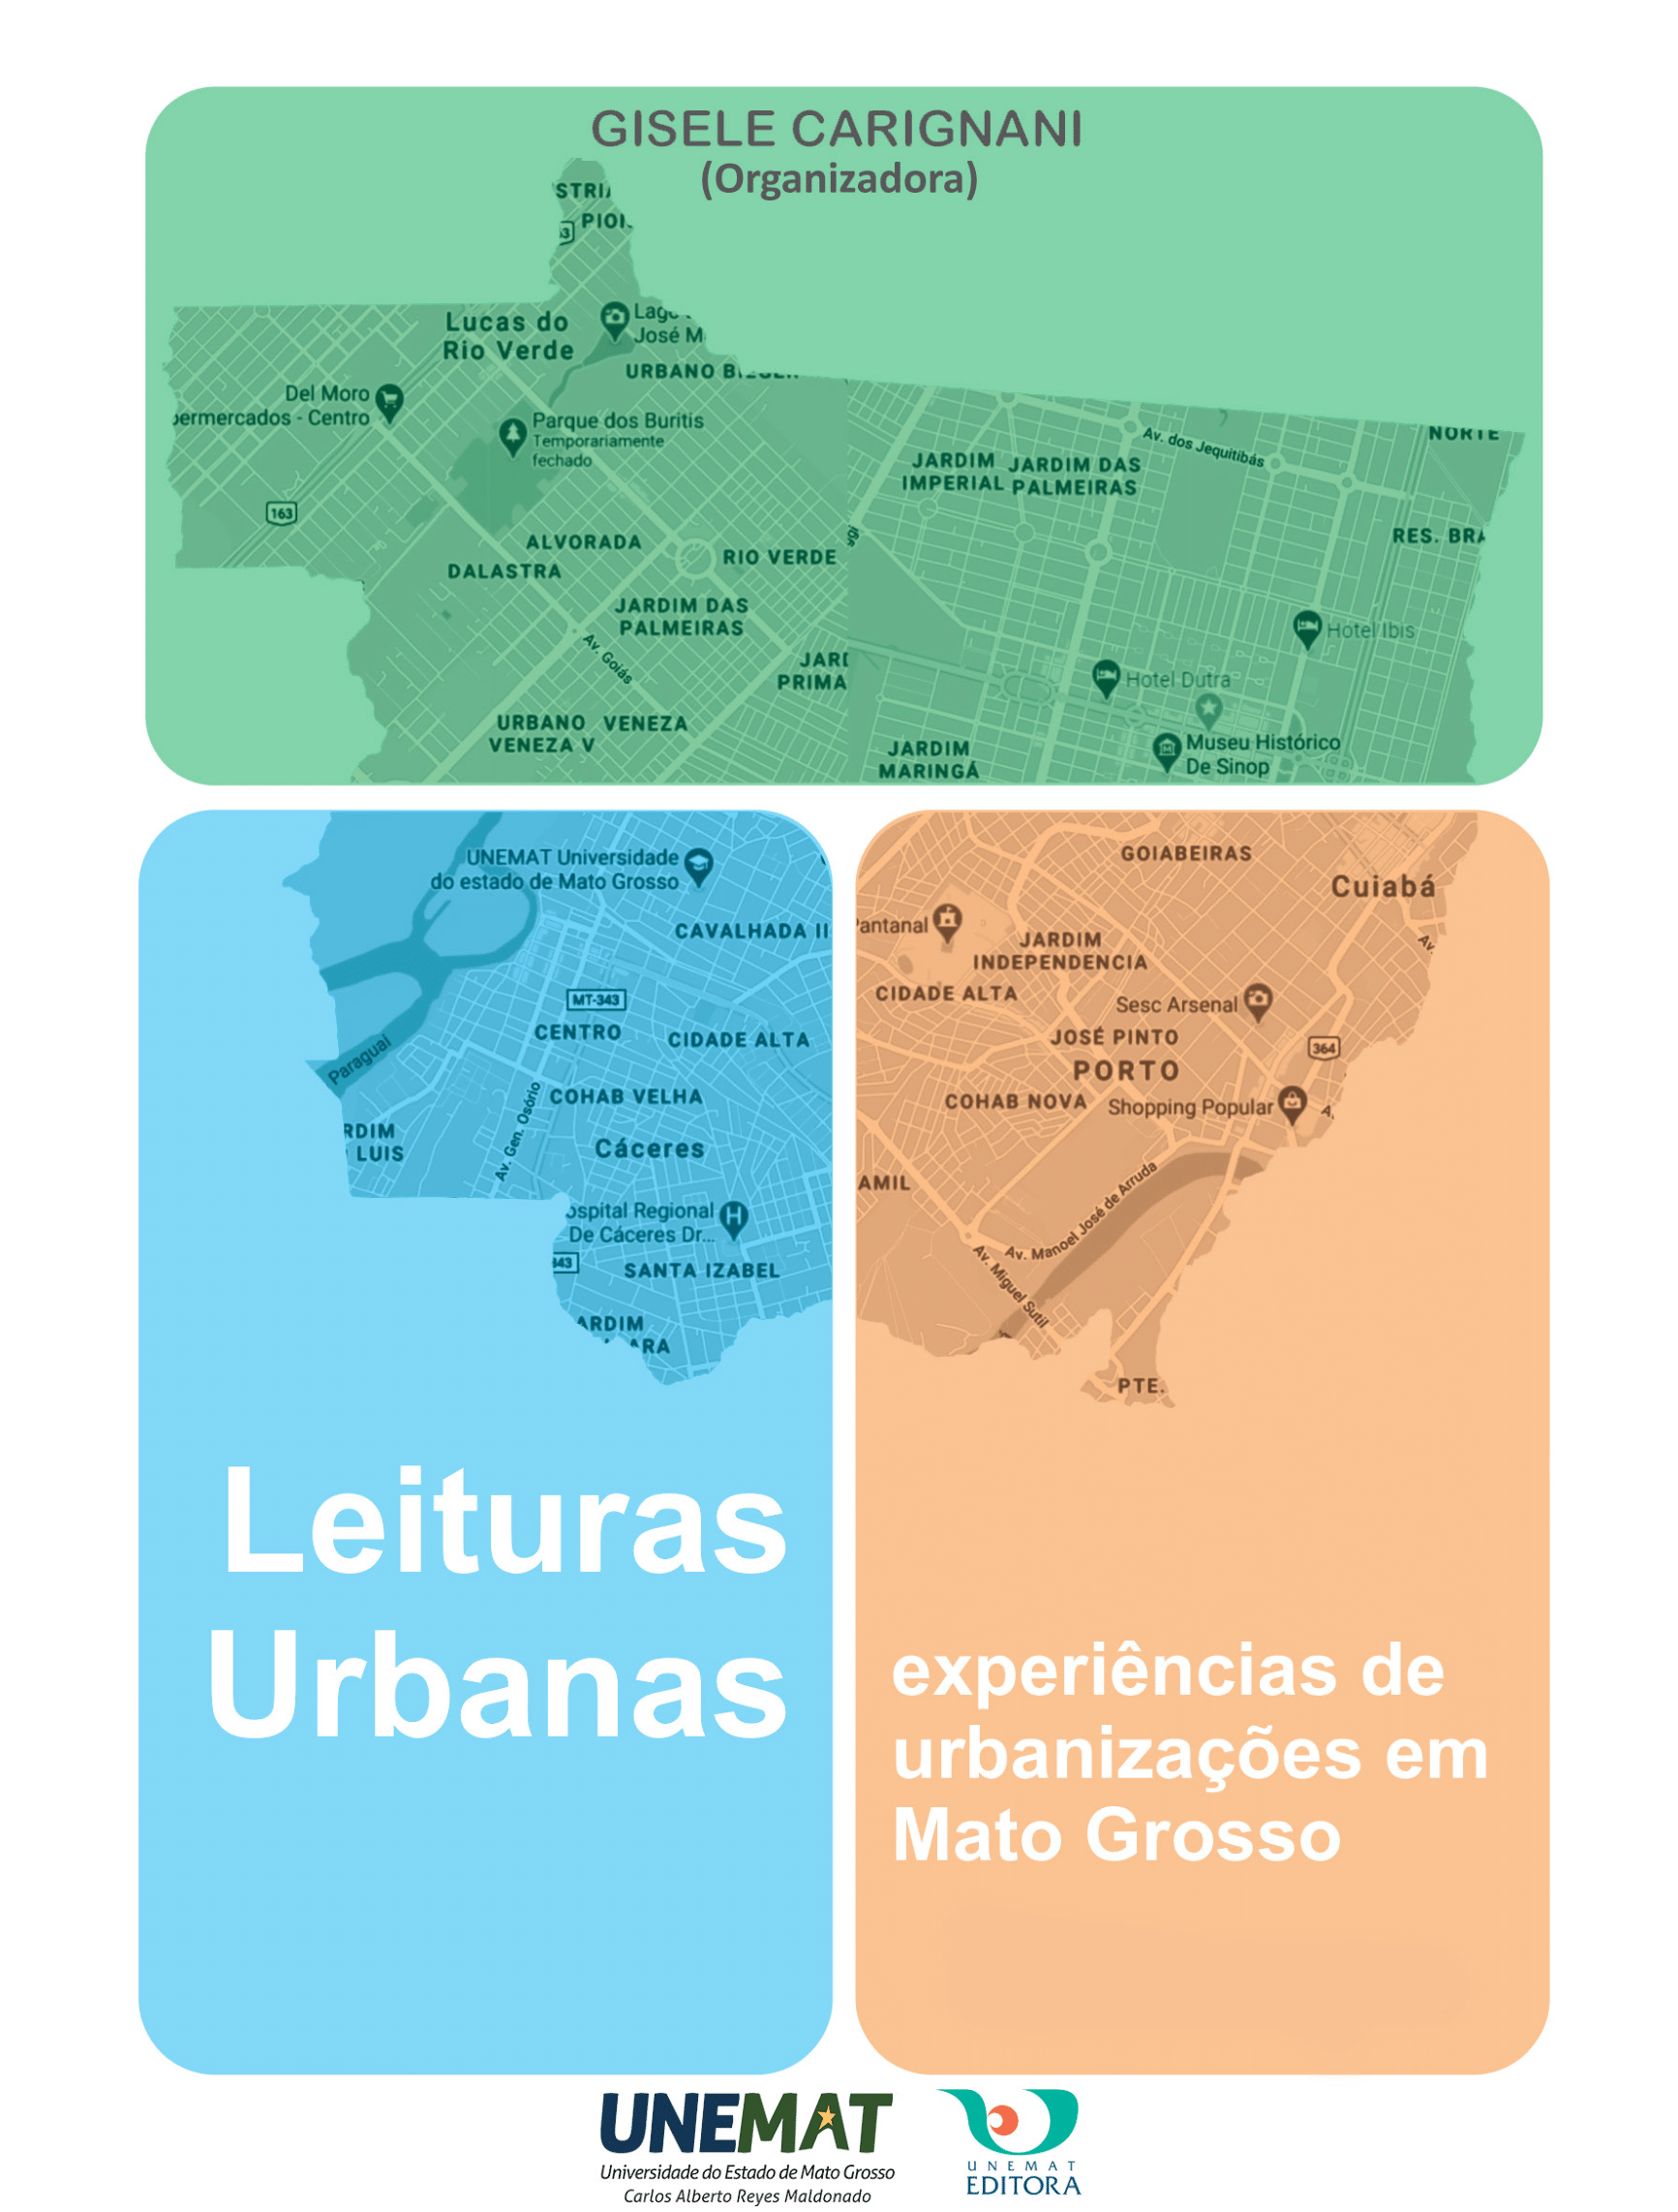 Leituras Urbanas: Experiências de Urbanizações em Mato Grosso